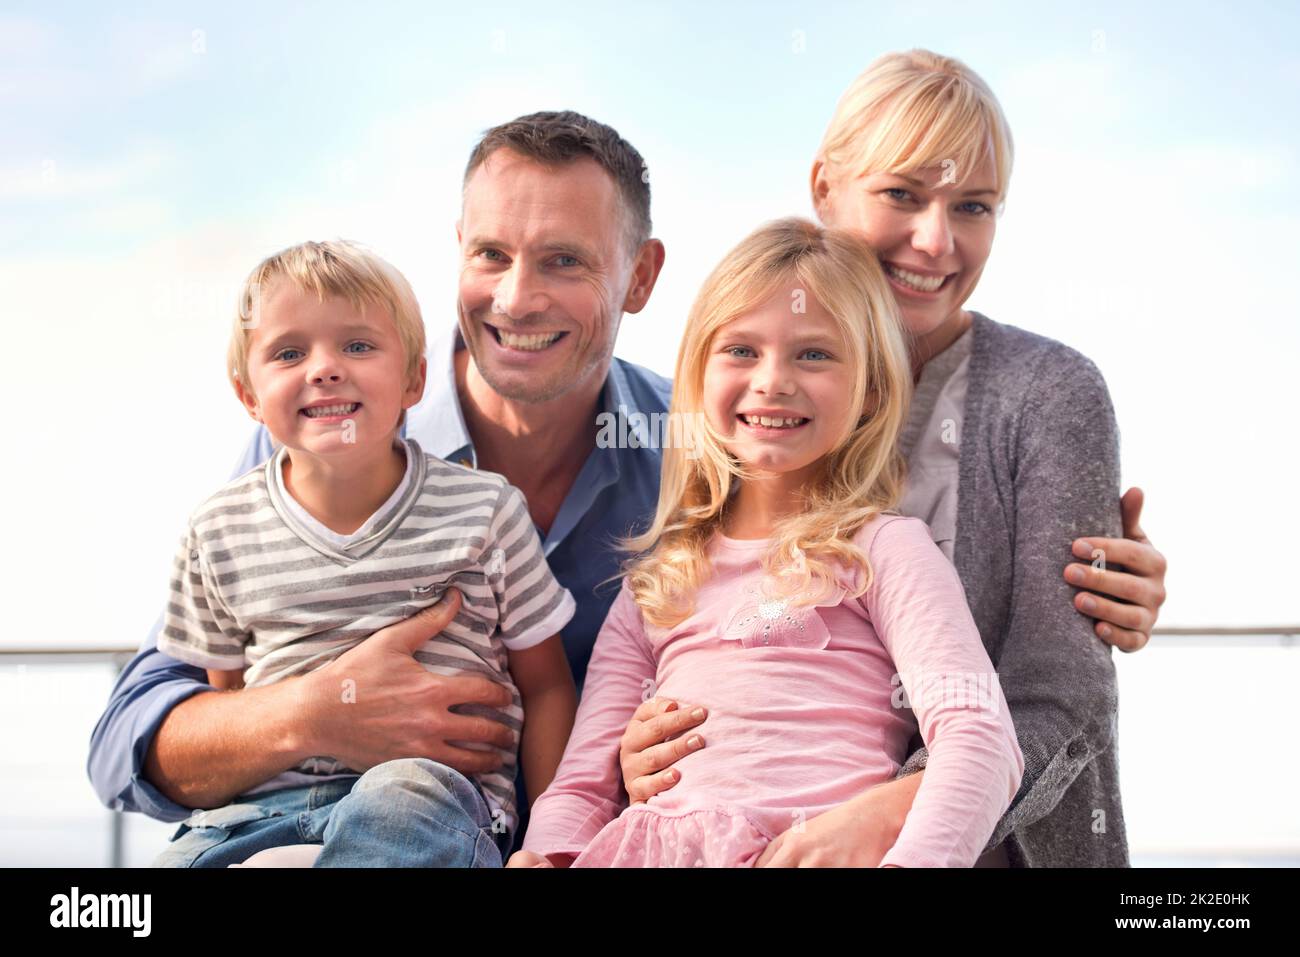 La famille d'abord. Un portrait de deux parents heureux passant du temps avec leurs jeunes enfants. Banque D'Images